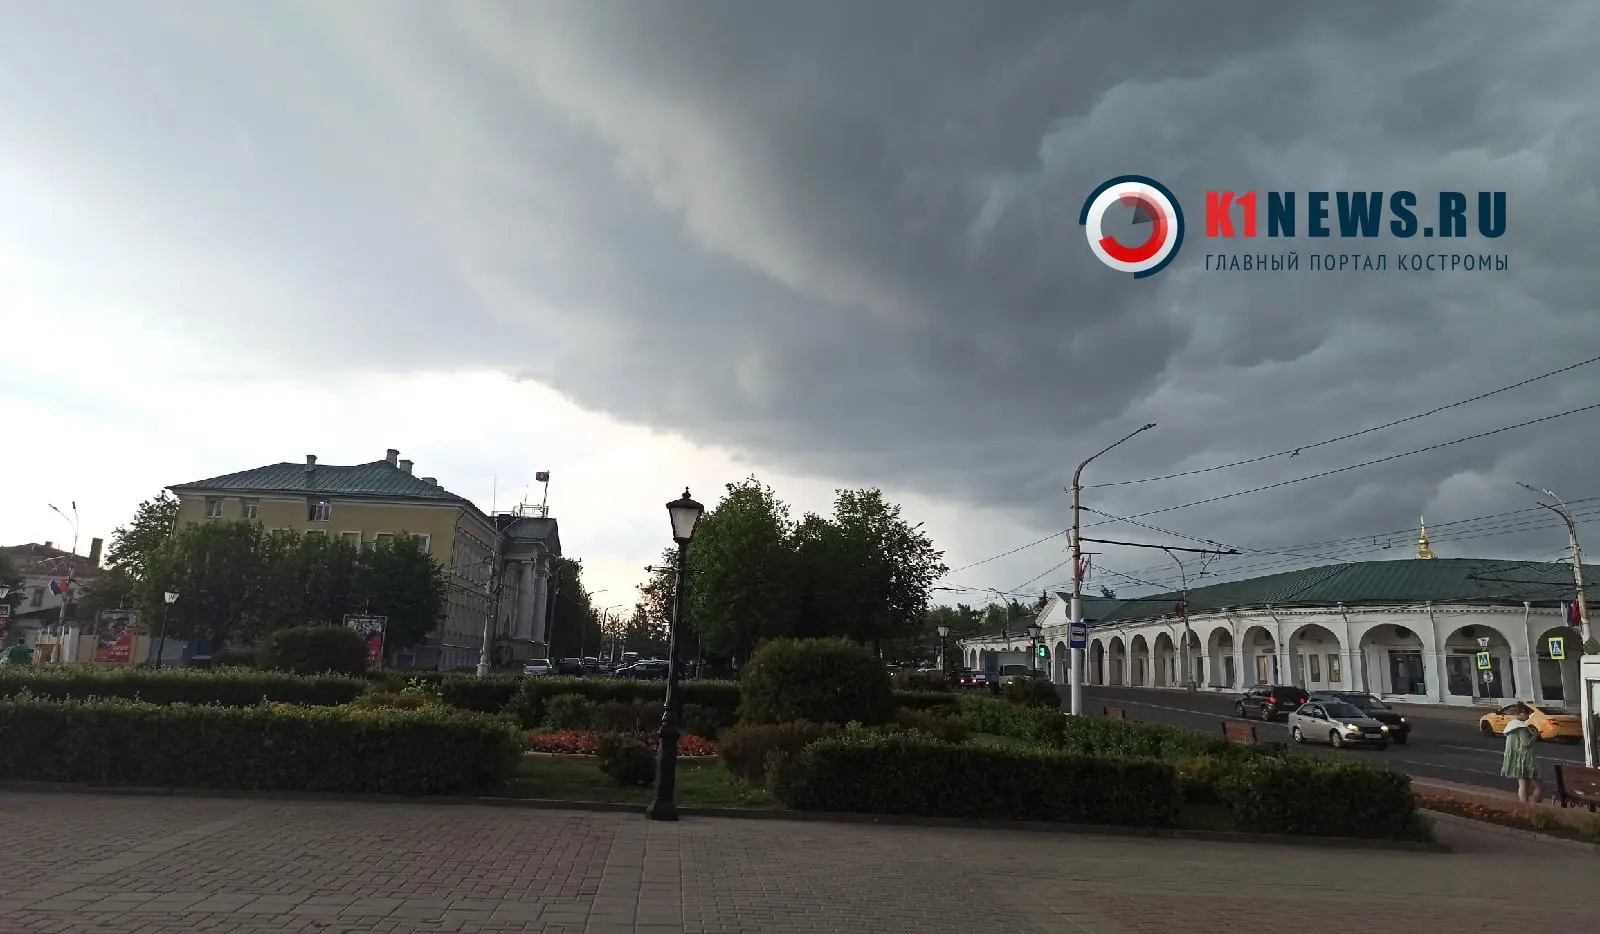 Сильный ветер и дождь прогнозируется в Костроме все выходные